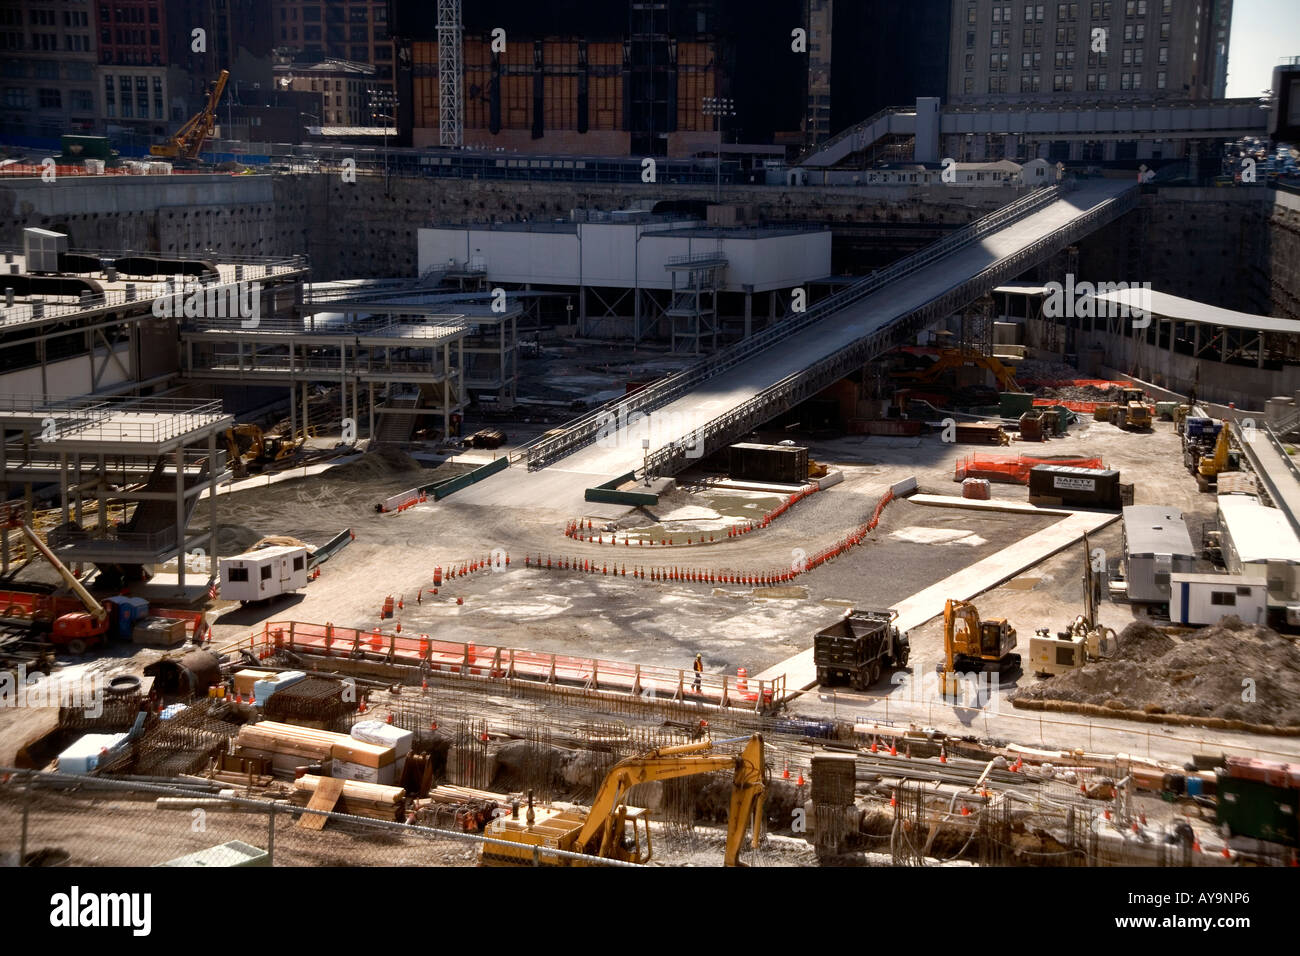 Le Ground Zero chantier de construction dans le Lower Manhattan New York City Financial District scène du 11 septembre 2001 Banque D'Images